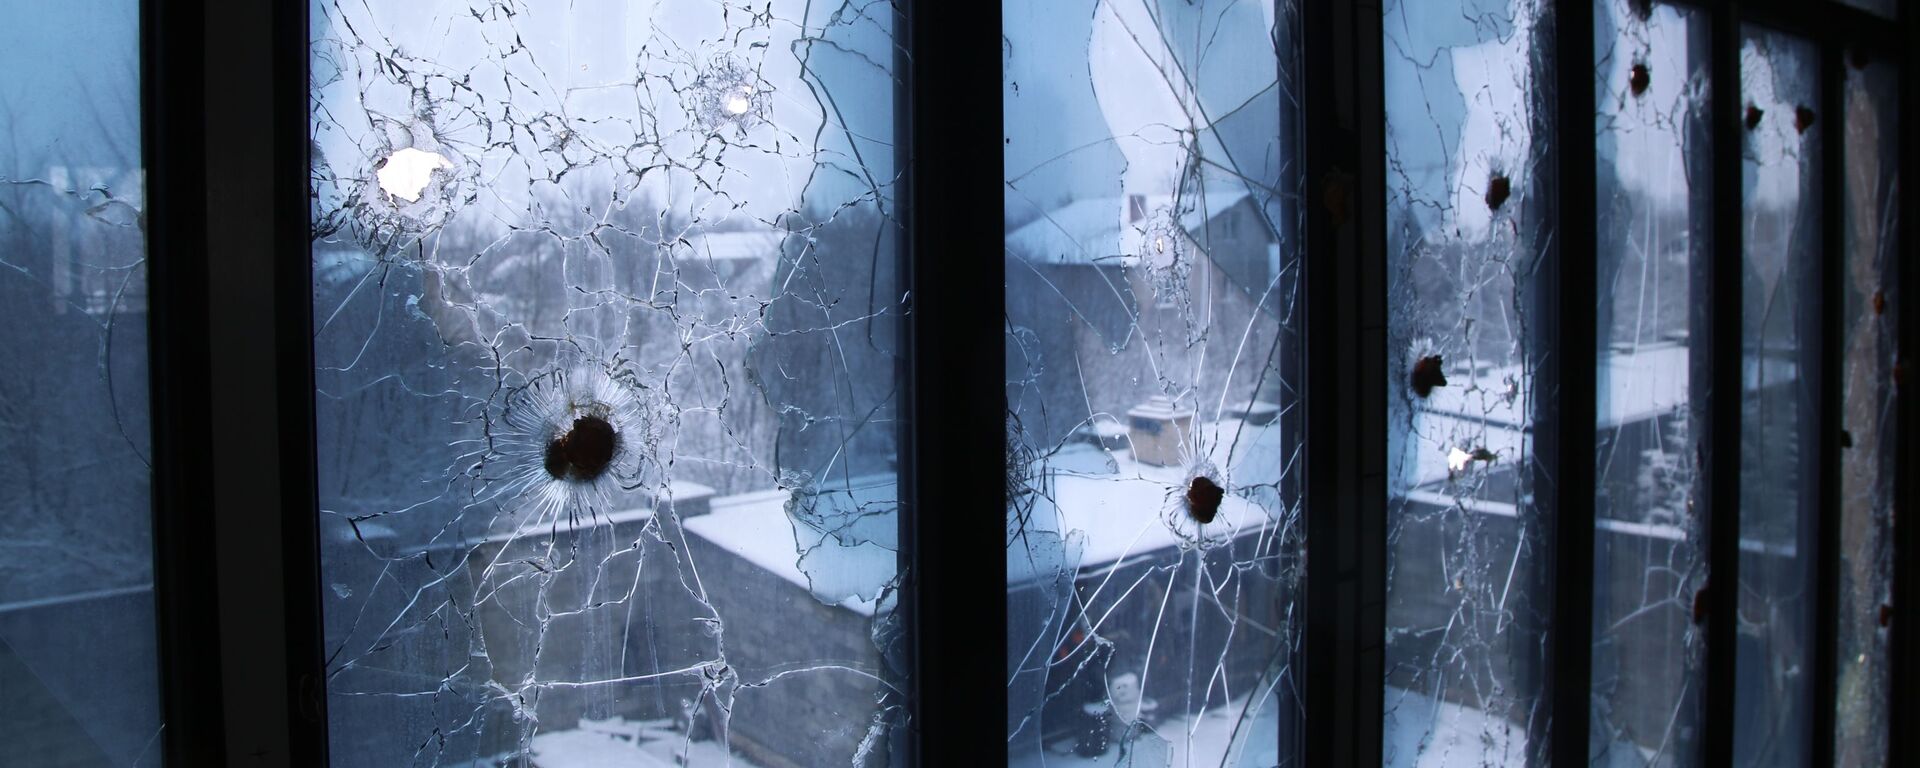 Трагови метака на прозорима куће у Доњецкој области - Sputnik Србија, 1920, 10.03.2021